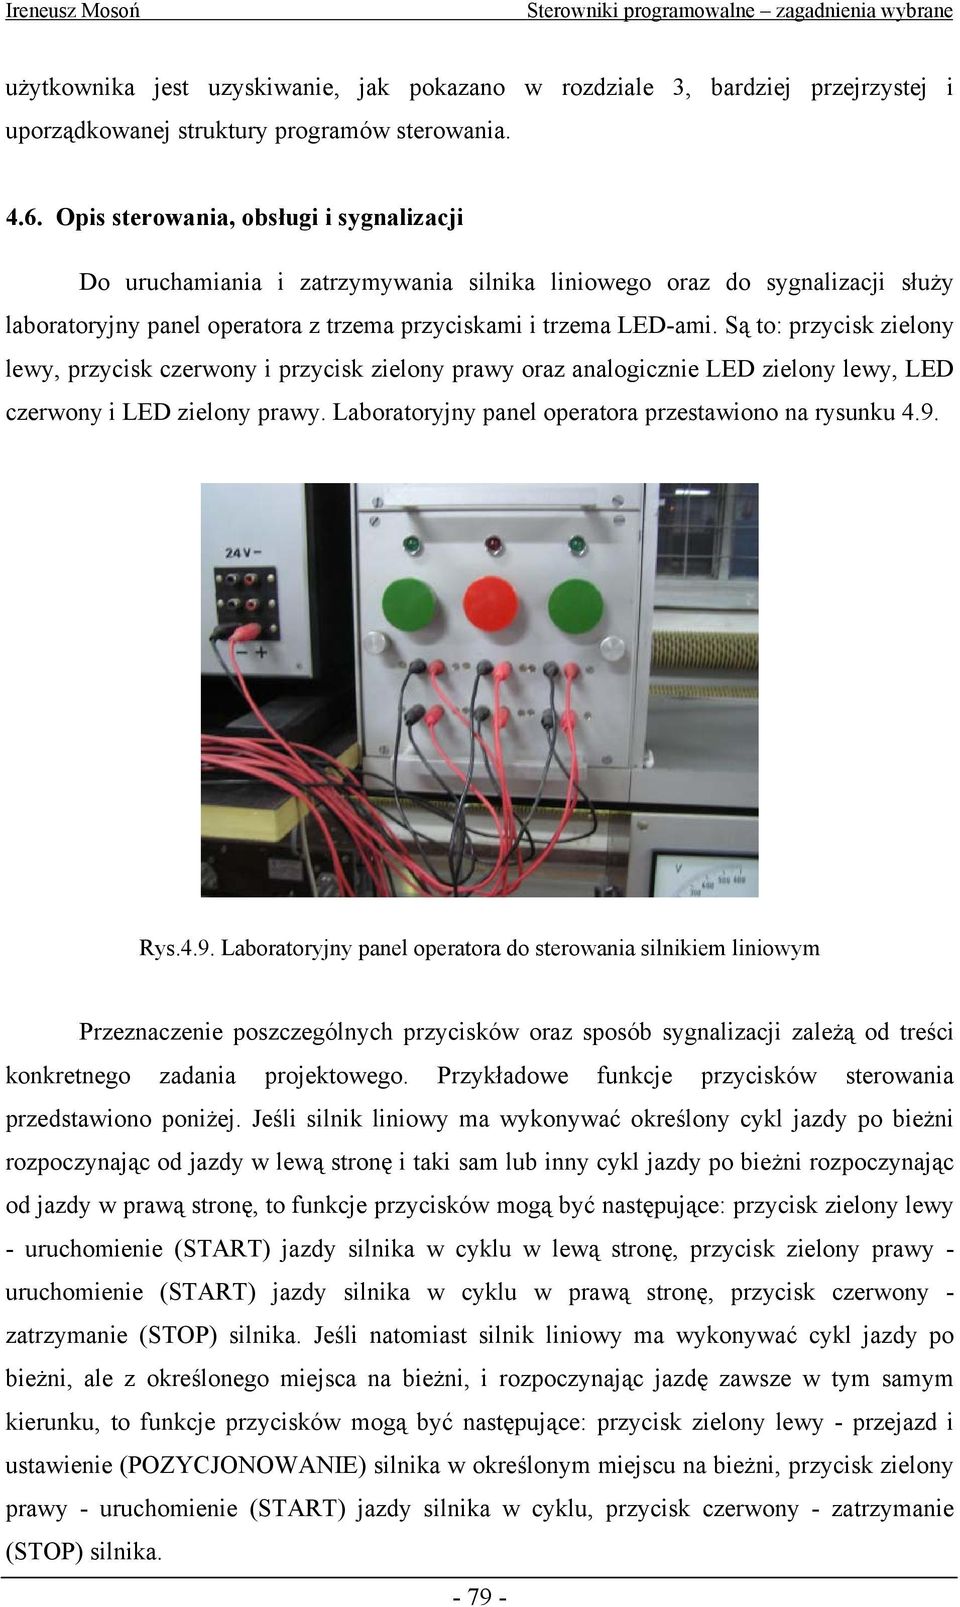 Są to: przycisk zielony lewy, przycisk czerwony i przycisk zielony prawy oraz analogicznie LED zielony lewy, LED czerwony i LED zielony prawy. Laboratoryjny panel operatora przestawiono na rysunku 4.